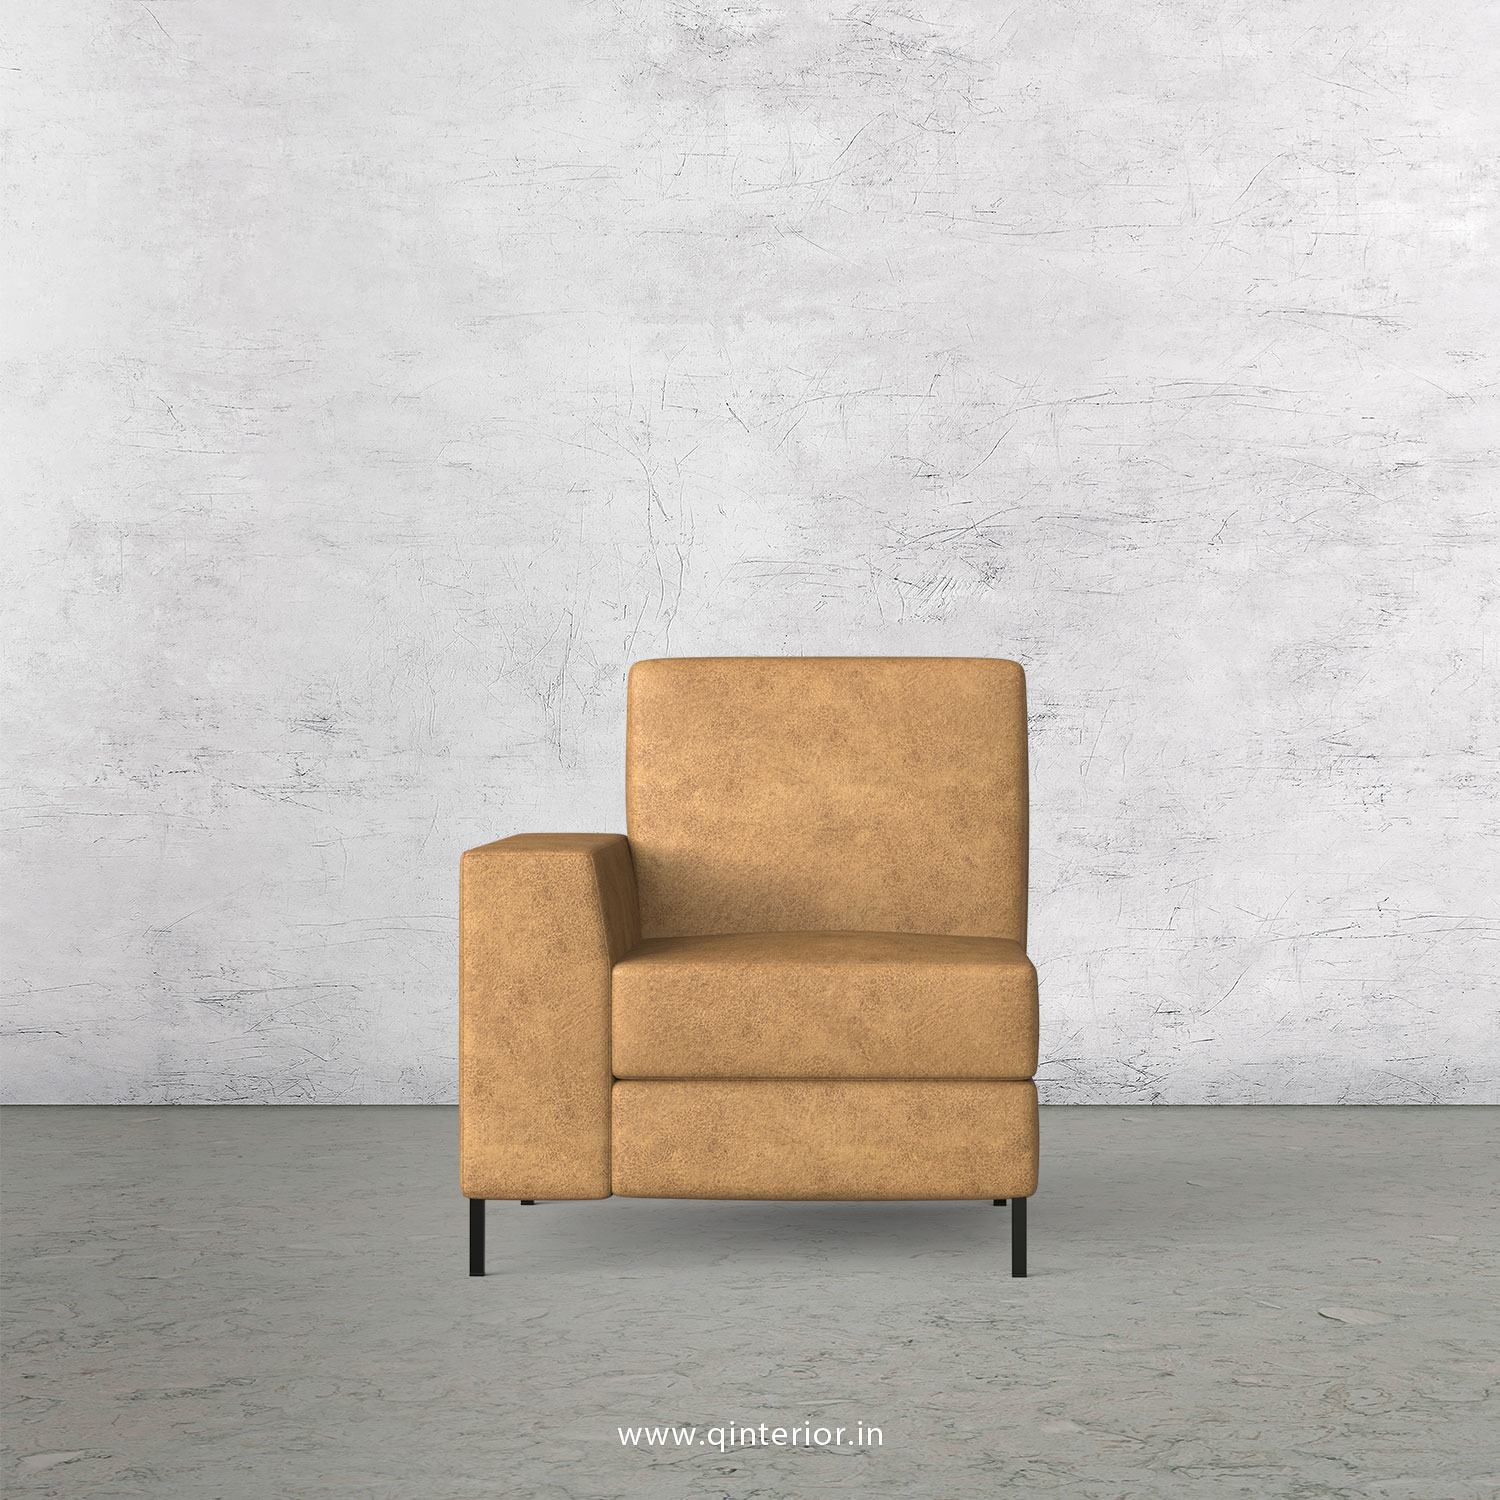 Viva 1 Seater Modular Sofa in Fab Leather Fabric - MSFA001 FL02